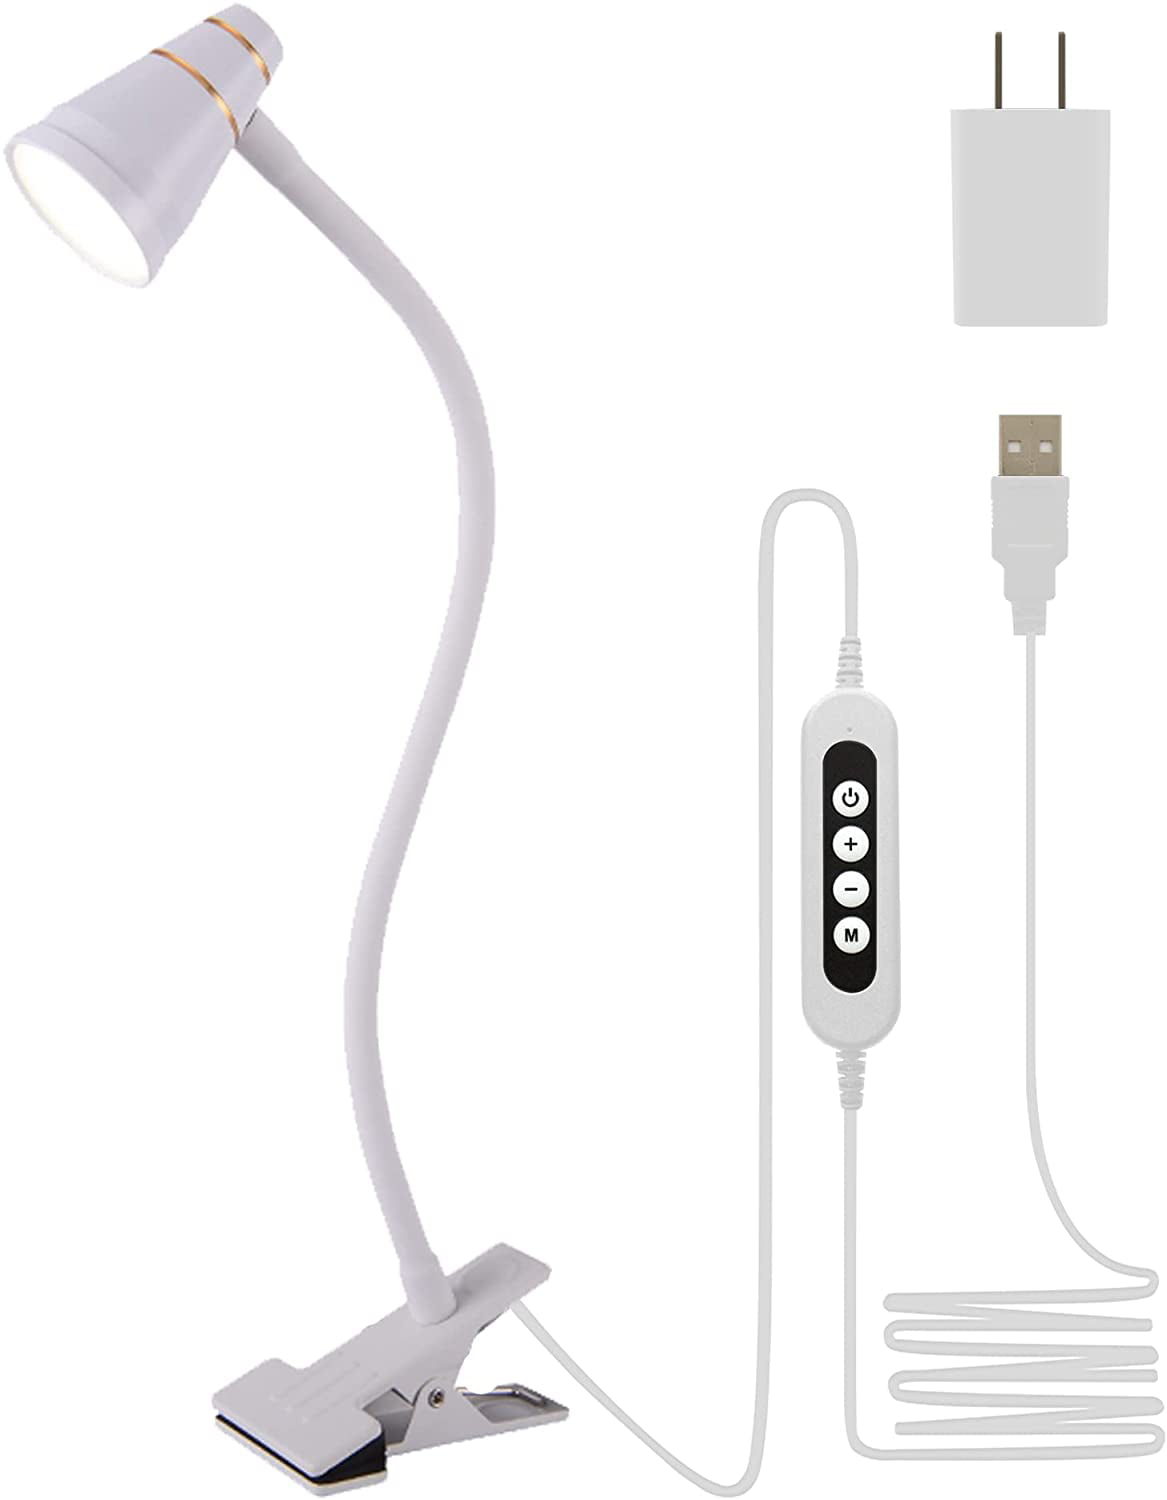 5V USB Powerful Light Lamp Stick Extendable Bright LED 